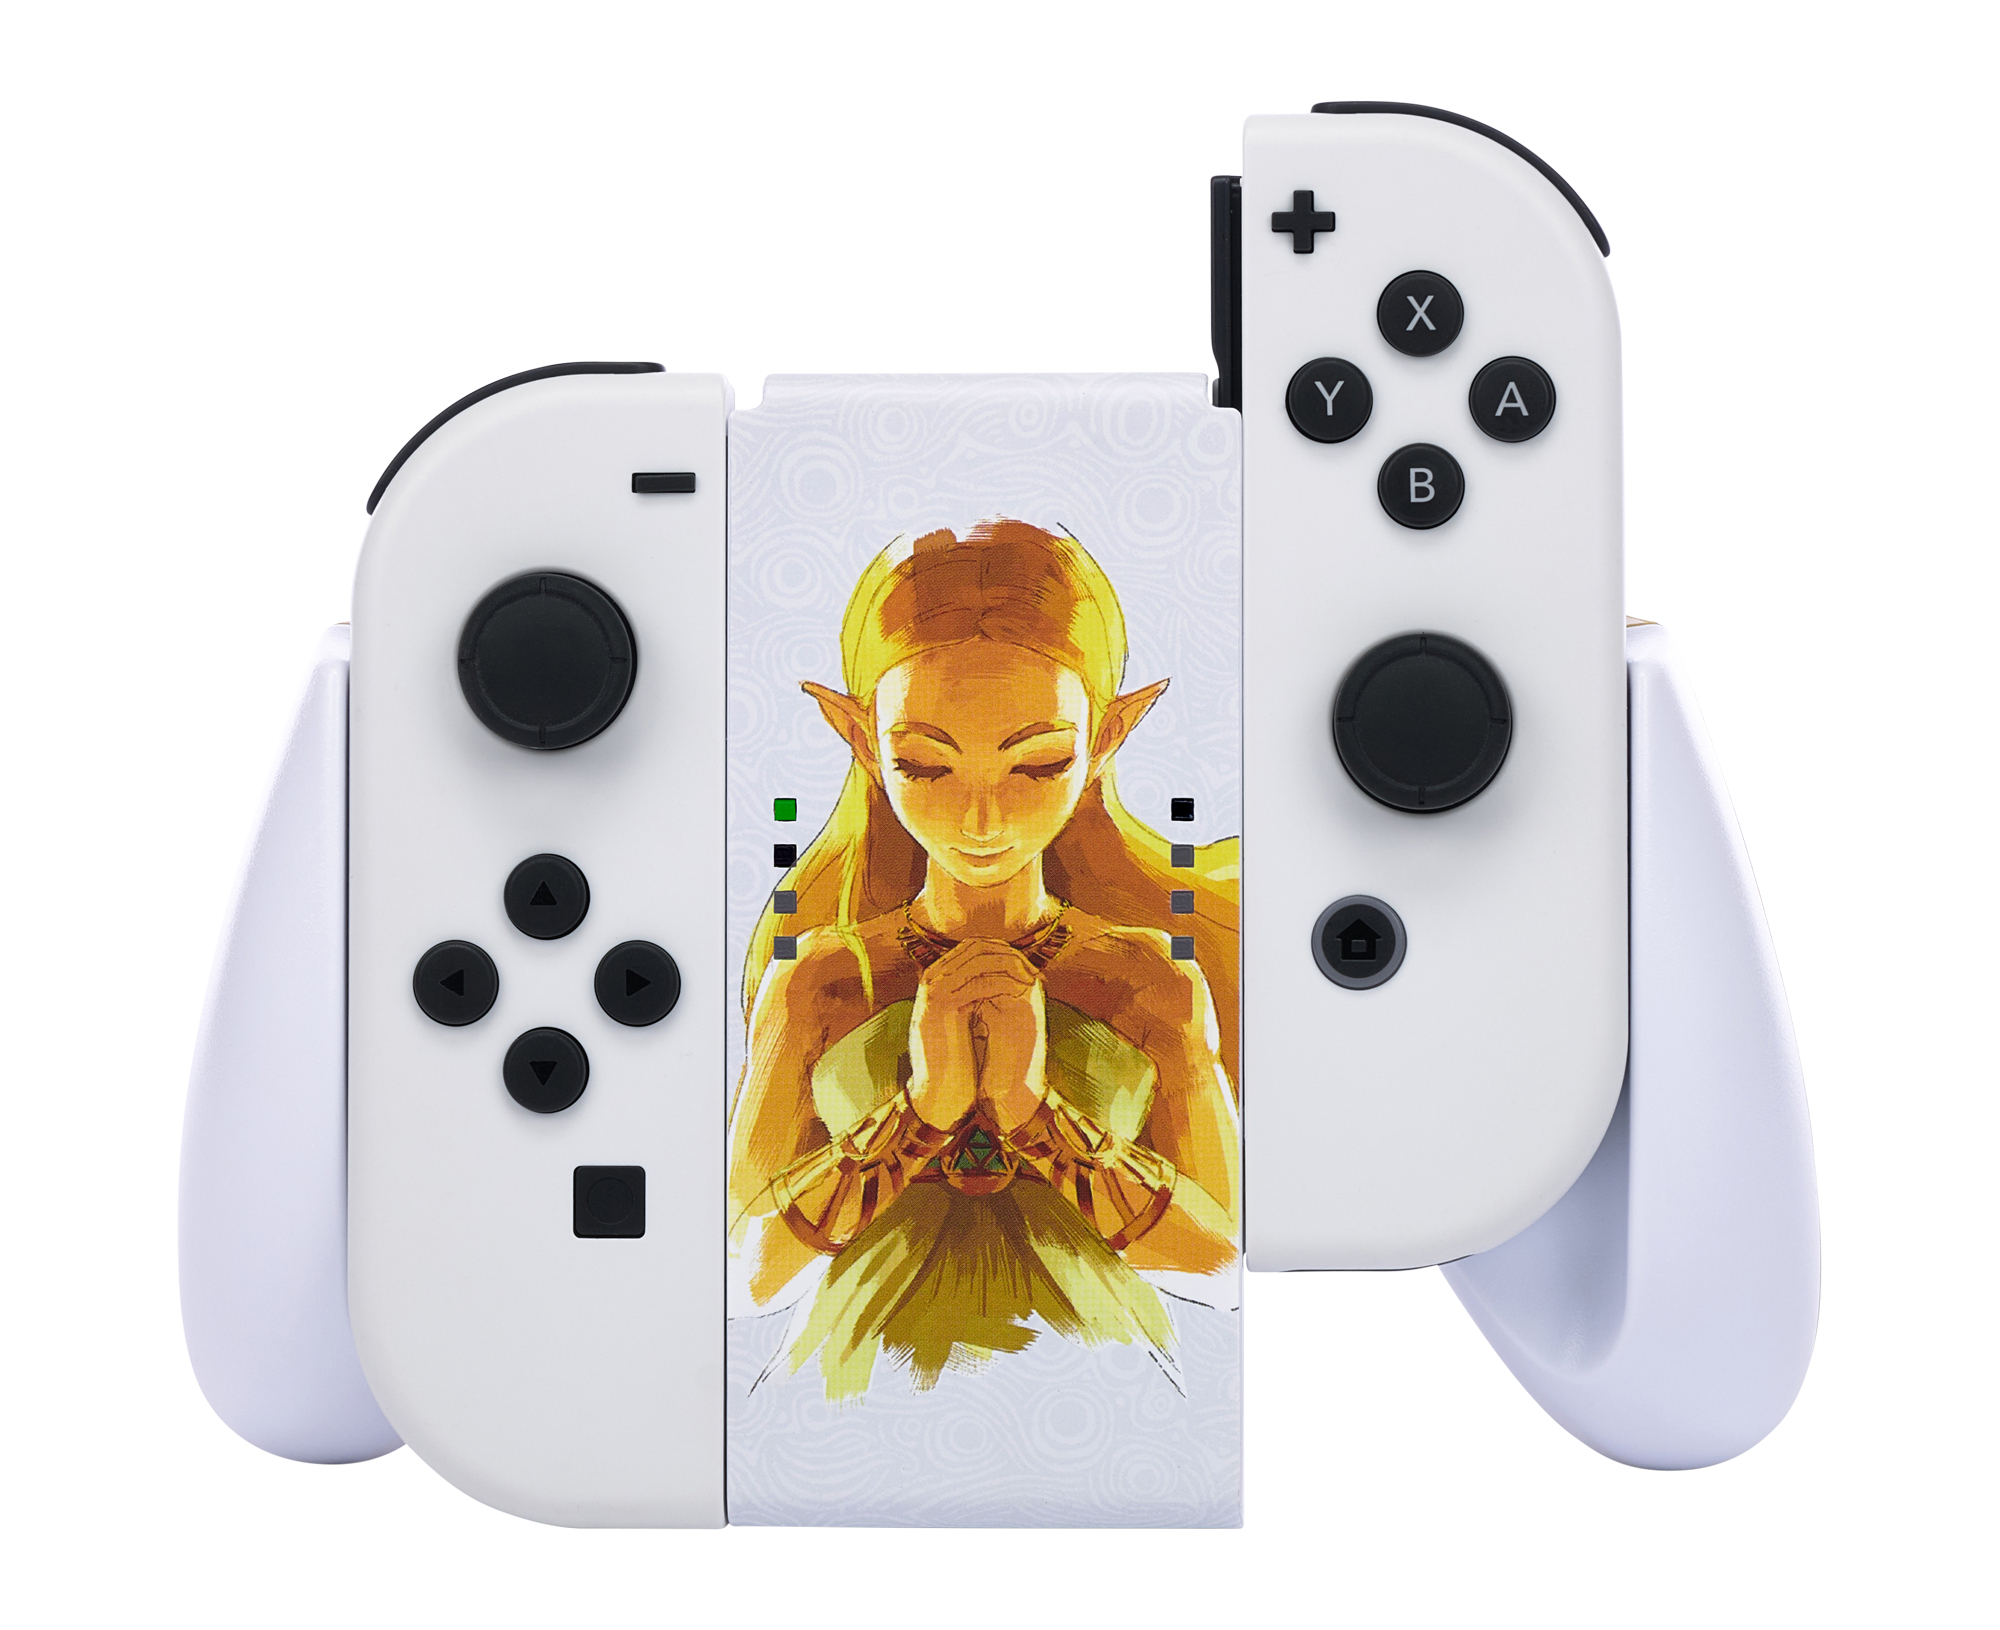 POWERA Joy-Con-Komfortgriff - Switch Mehrfarbig für Nintendo Zelda, Gaming-Zubehör, Princess